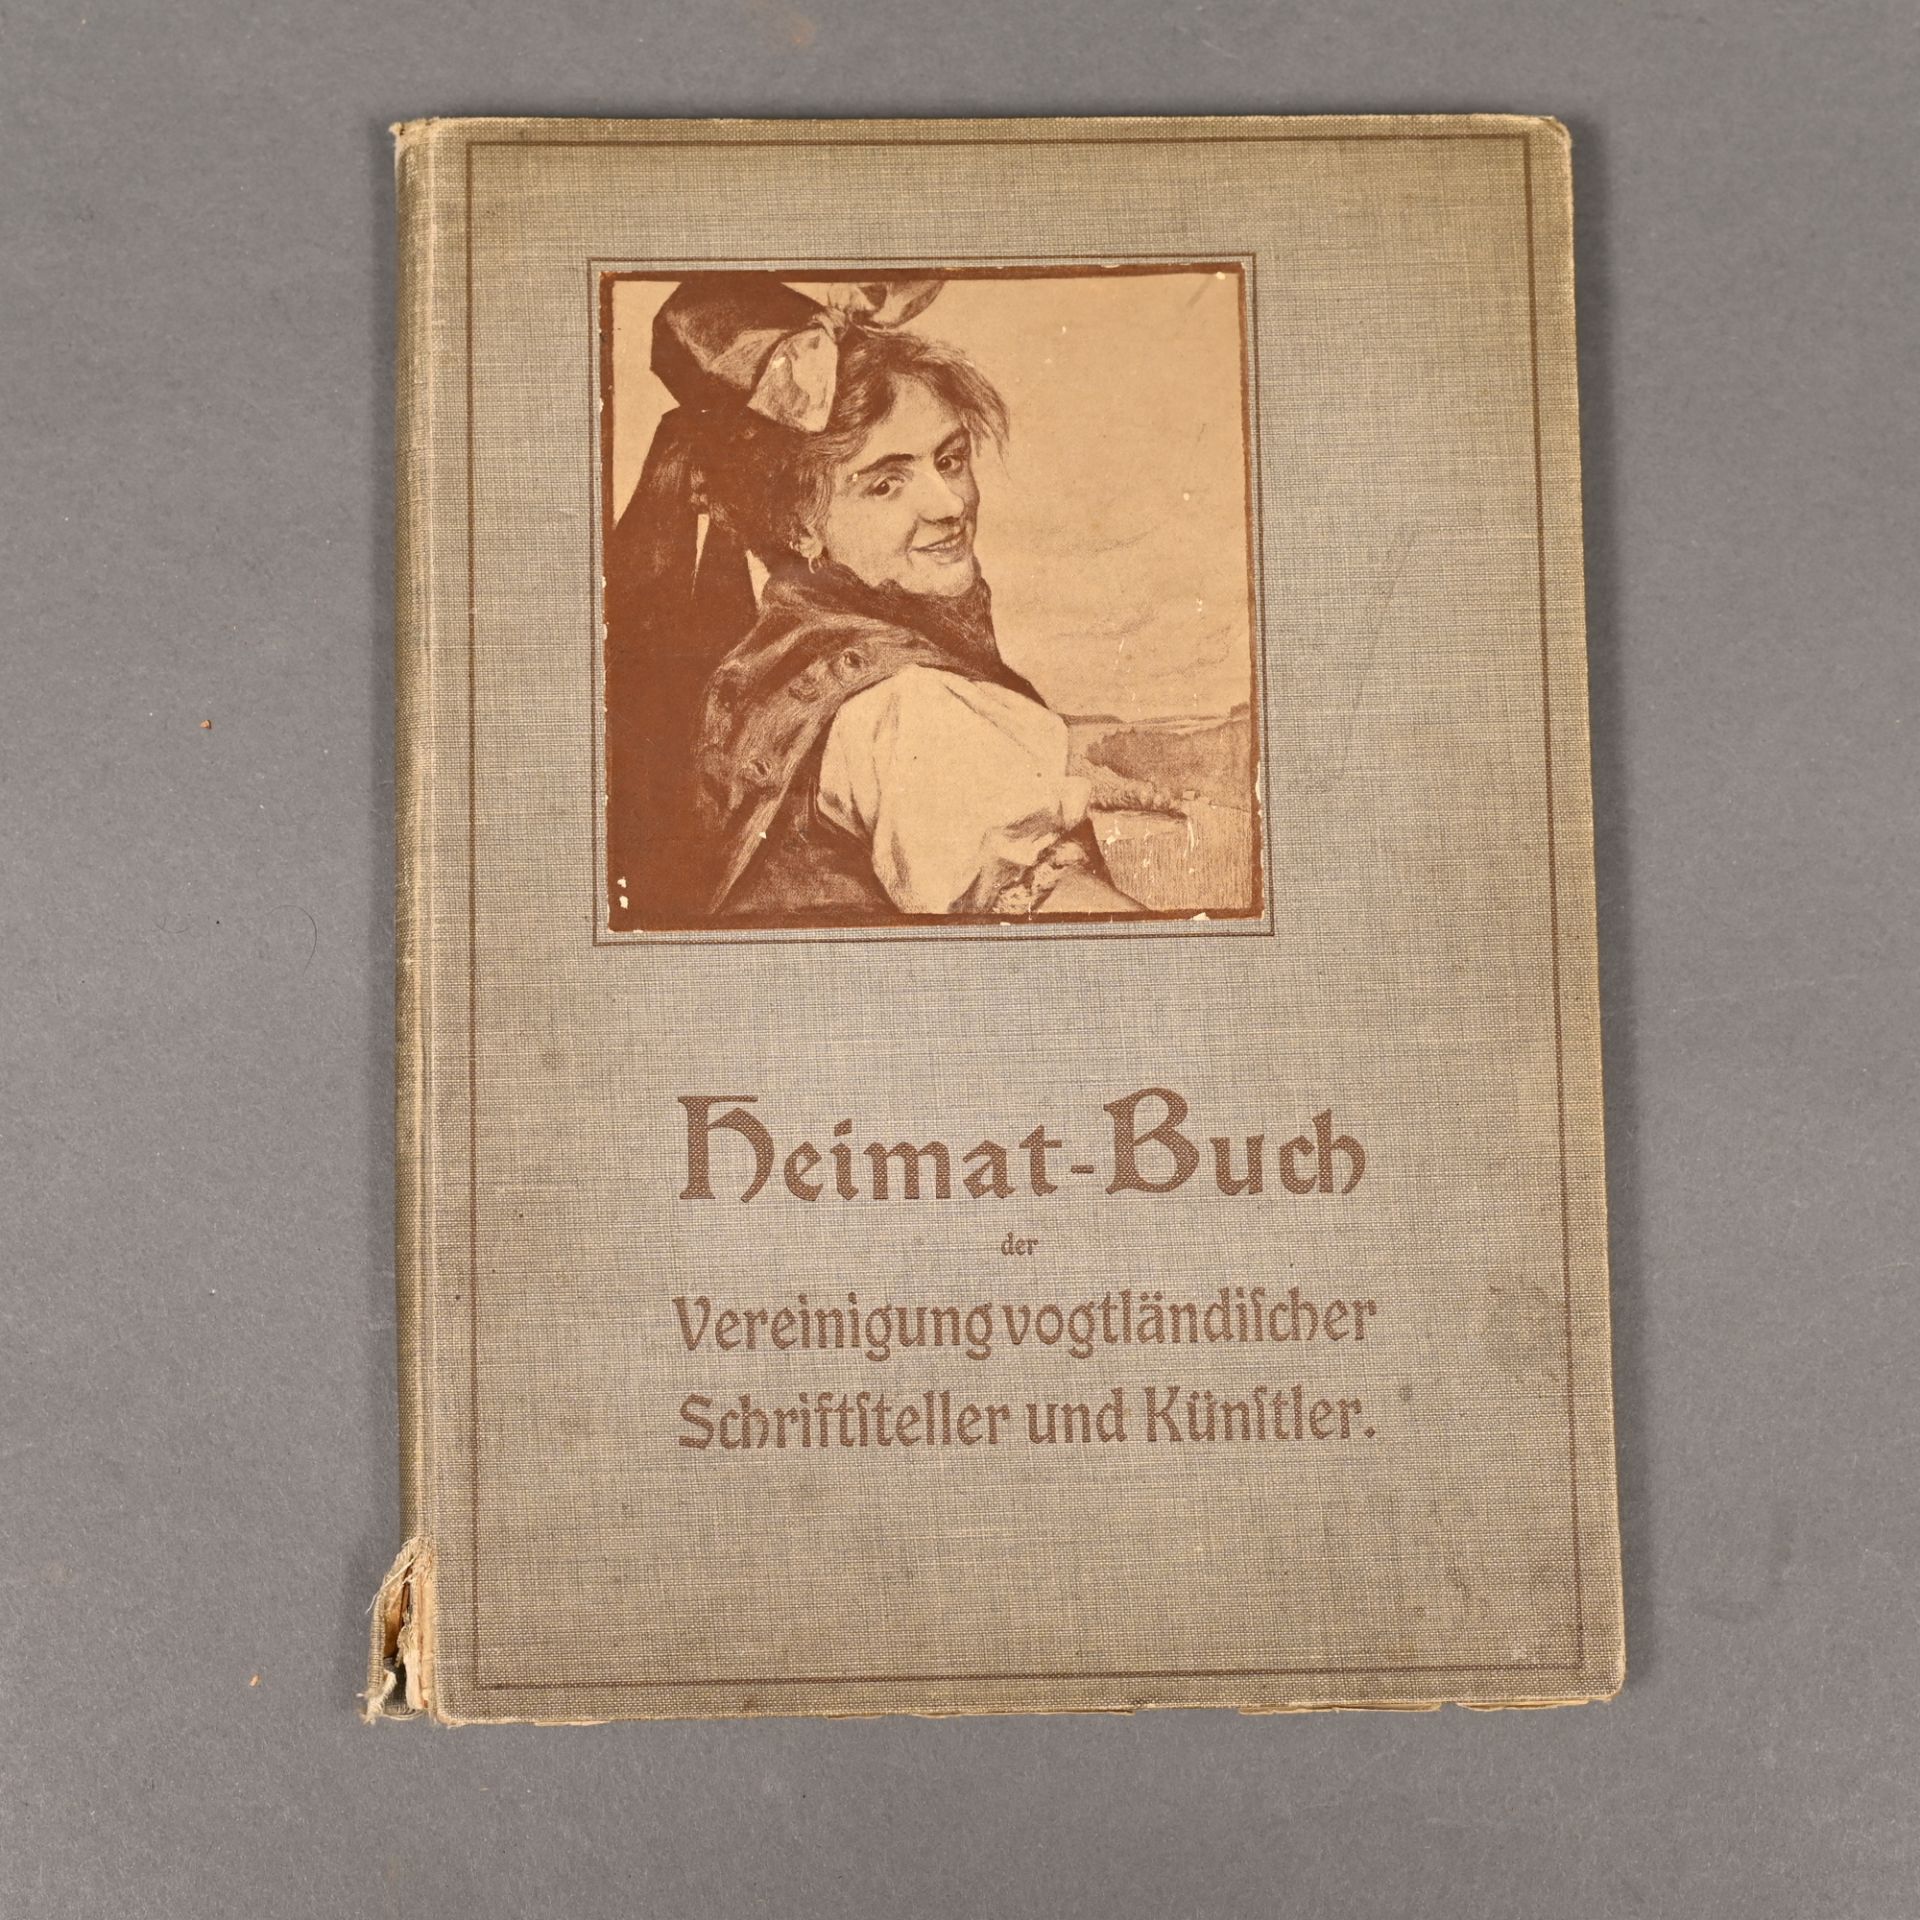 "Heimat-Buch der Vereinigung vogtländischer Schriftsteller und Künstler", 3.Auflage, Selbstverl.